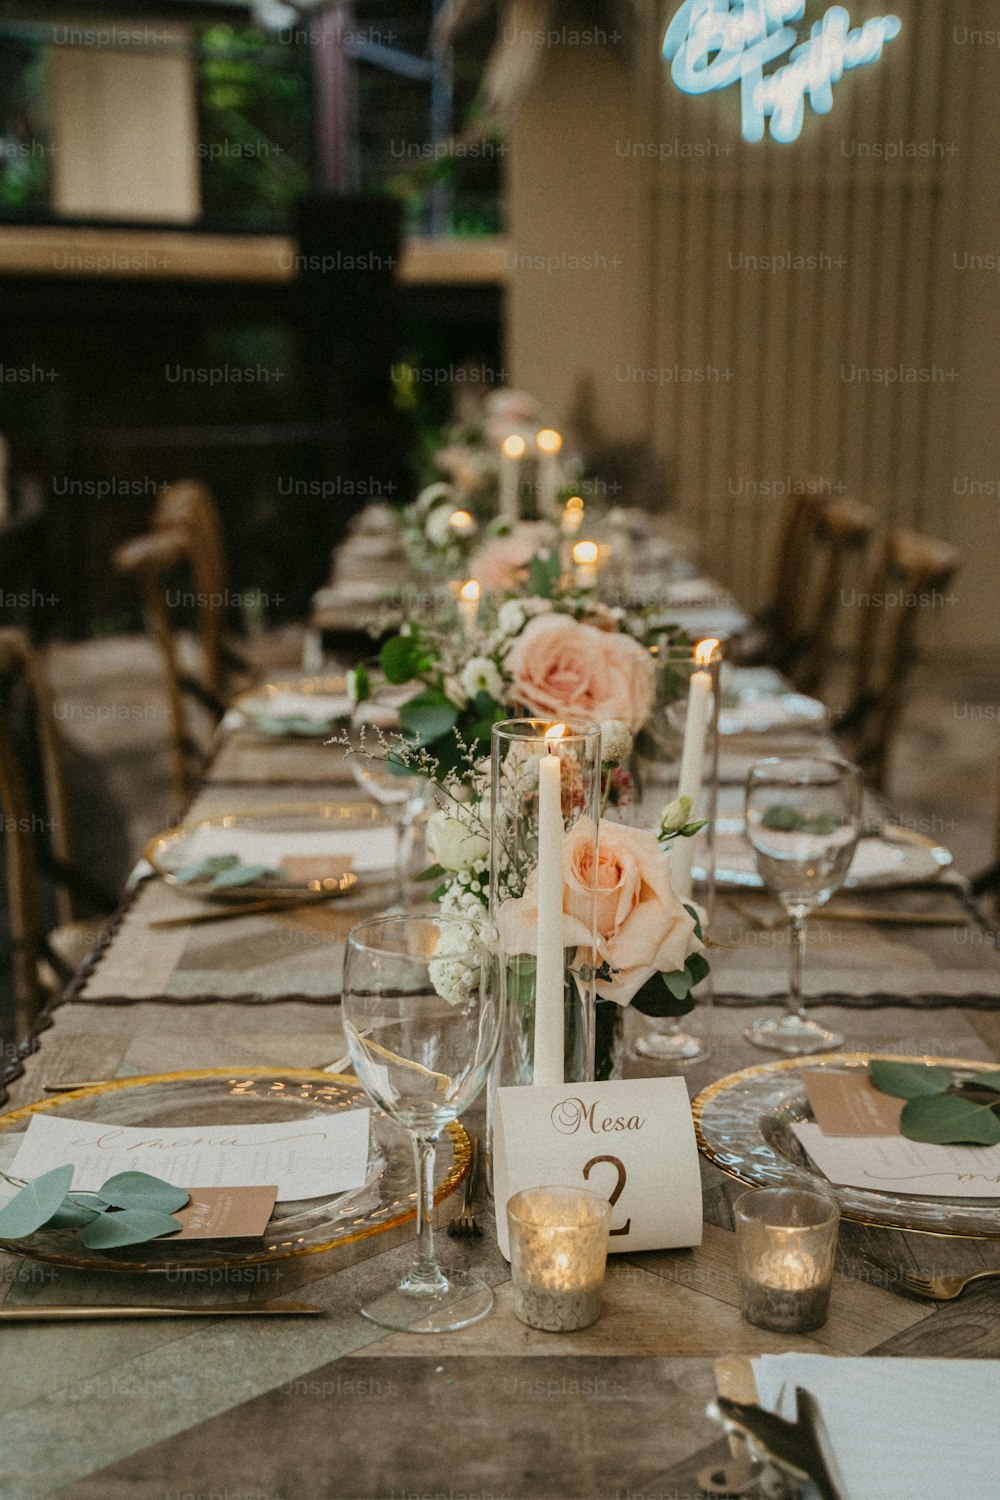 Una mesa larga está puesta con velas y flores